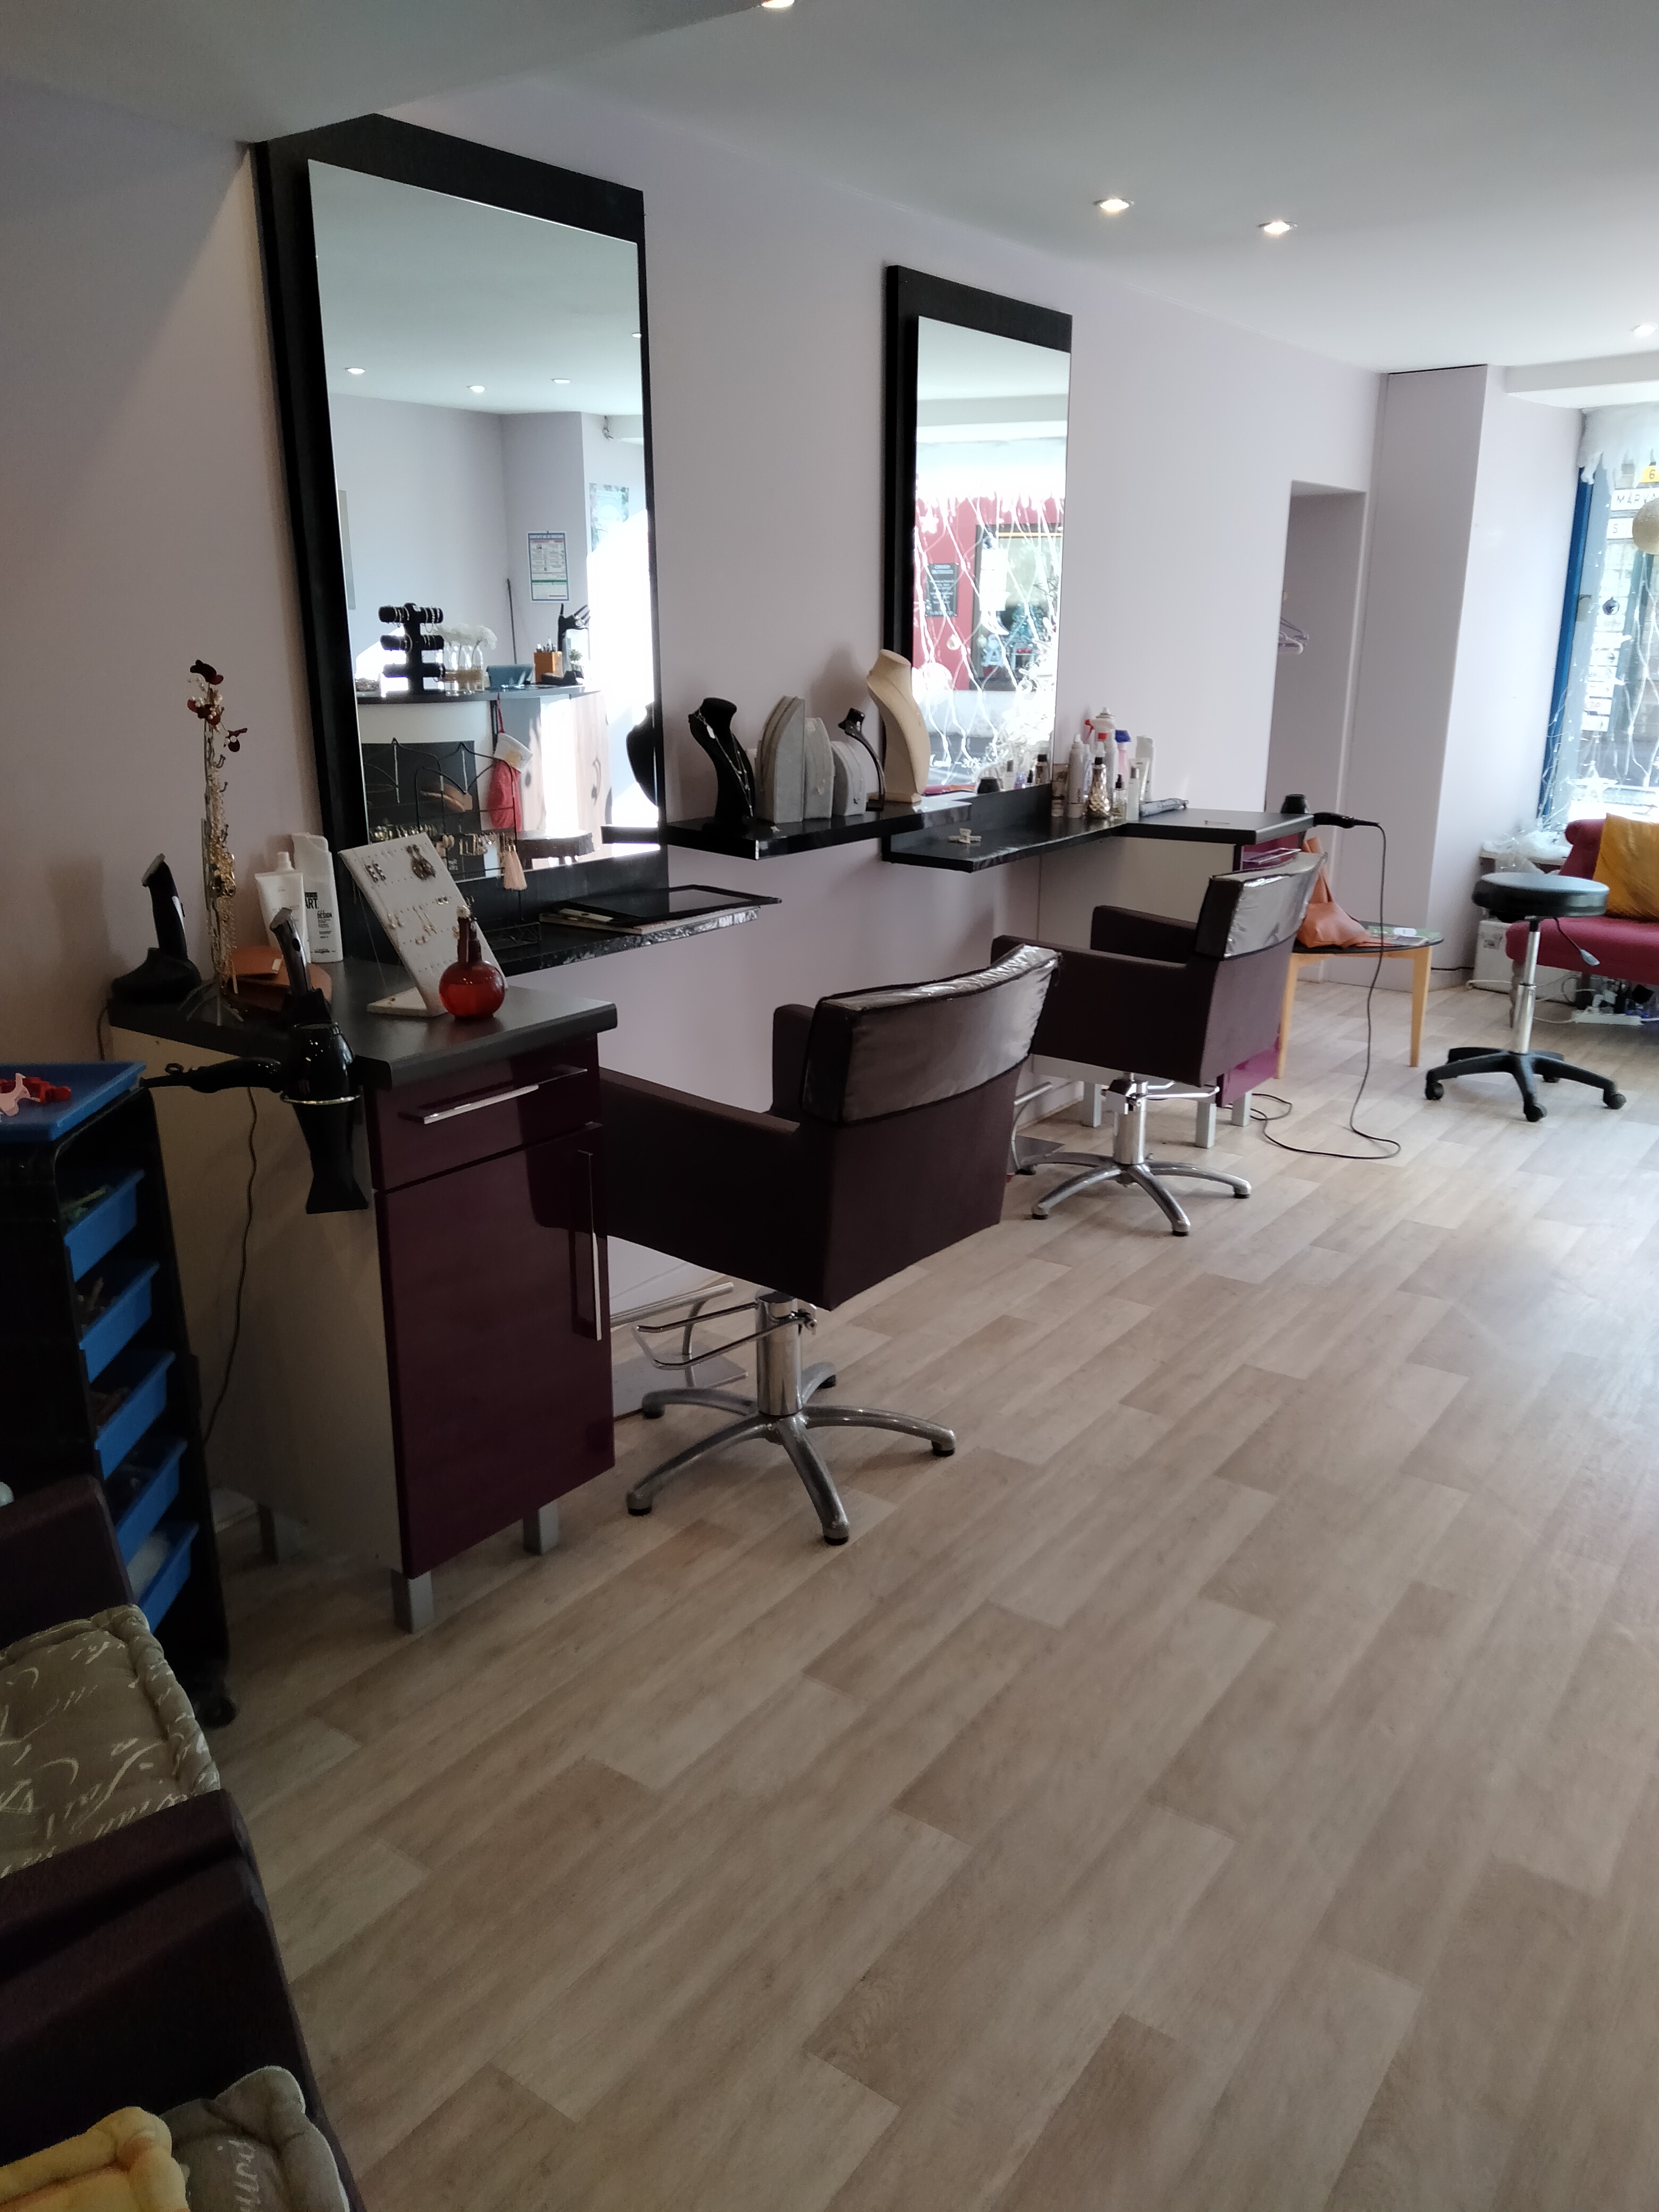 Vend fond de commerce Salon de coiffure 
Village dynamique 
Bonne clientèle 
Salon très bien situé rue principale près des commerces 
Loyer 200€